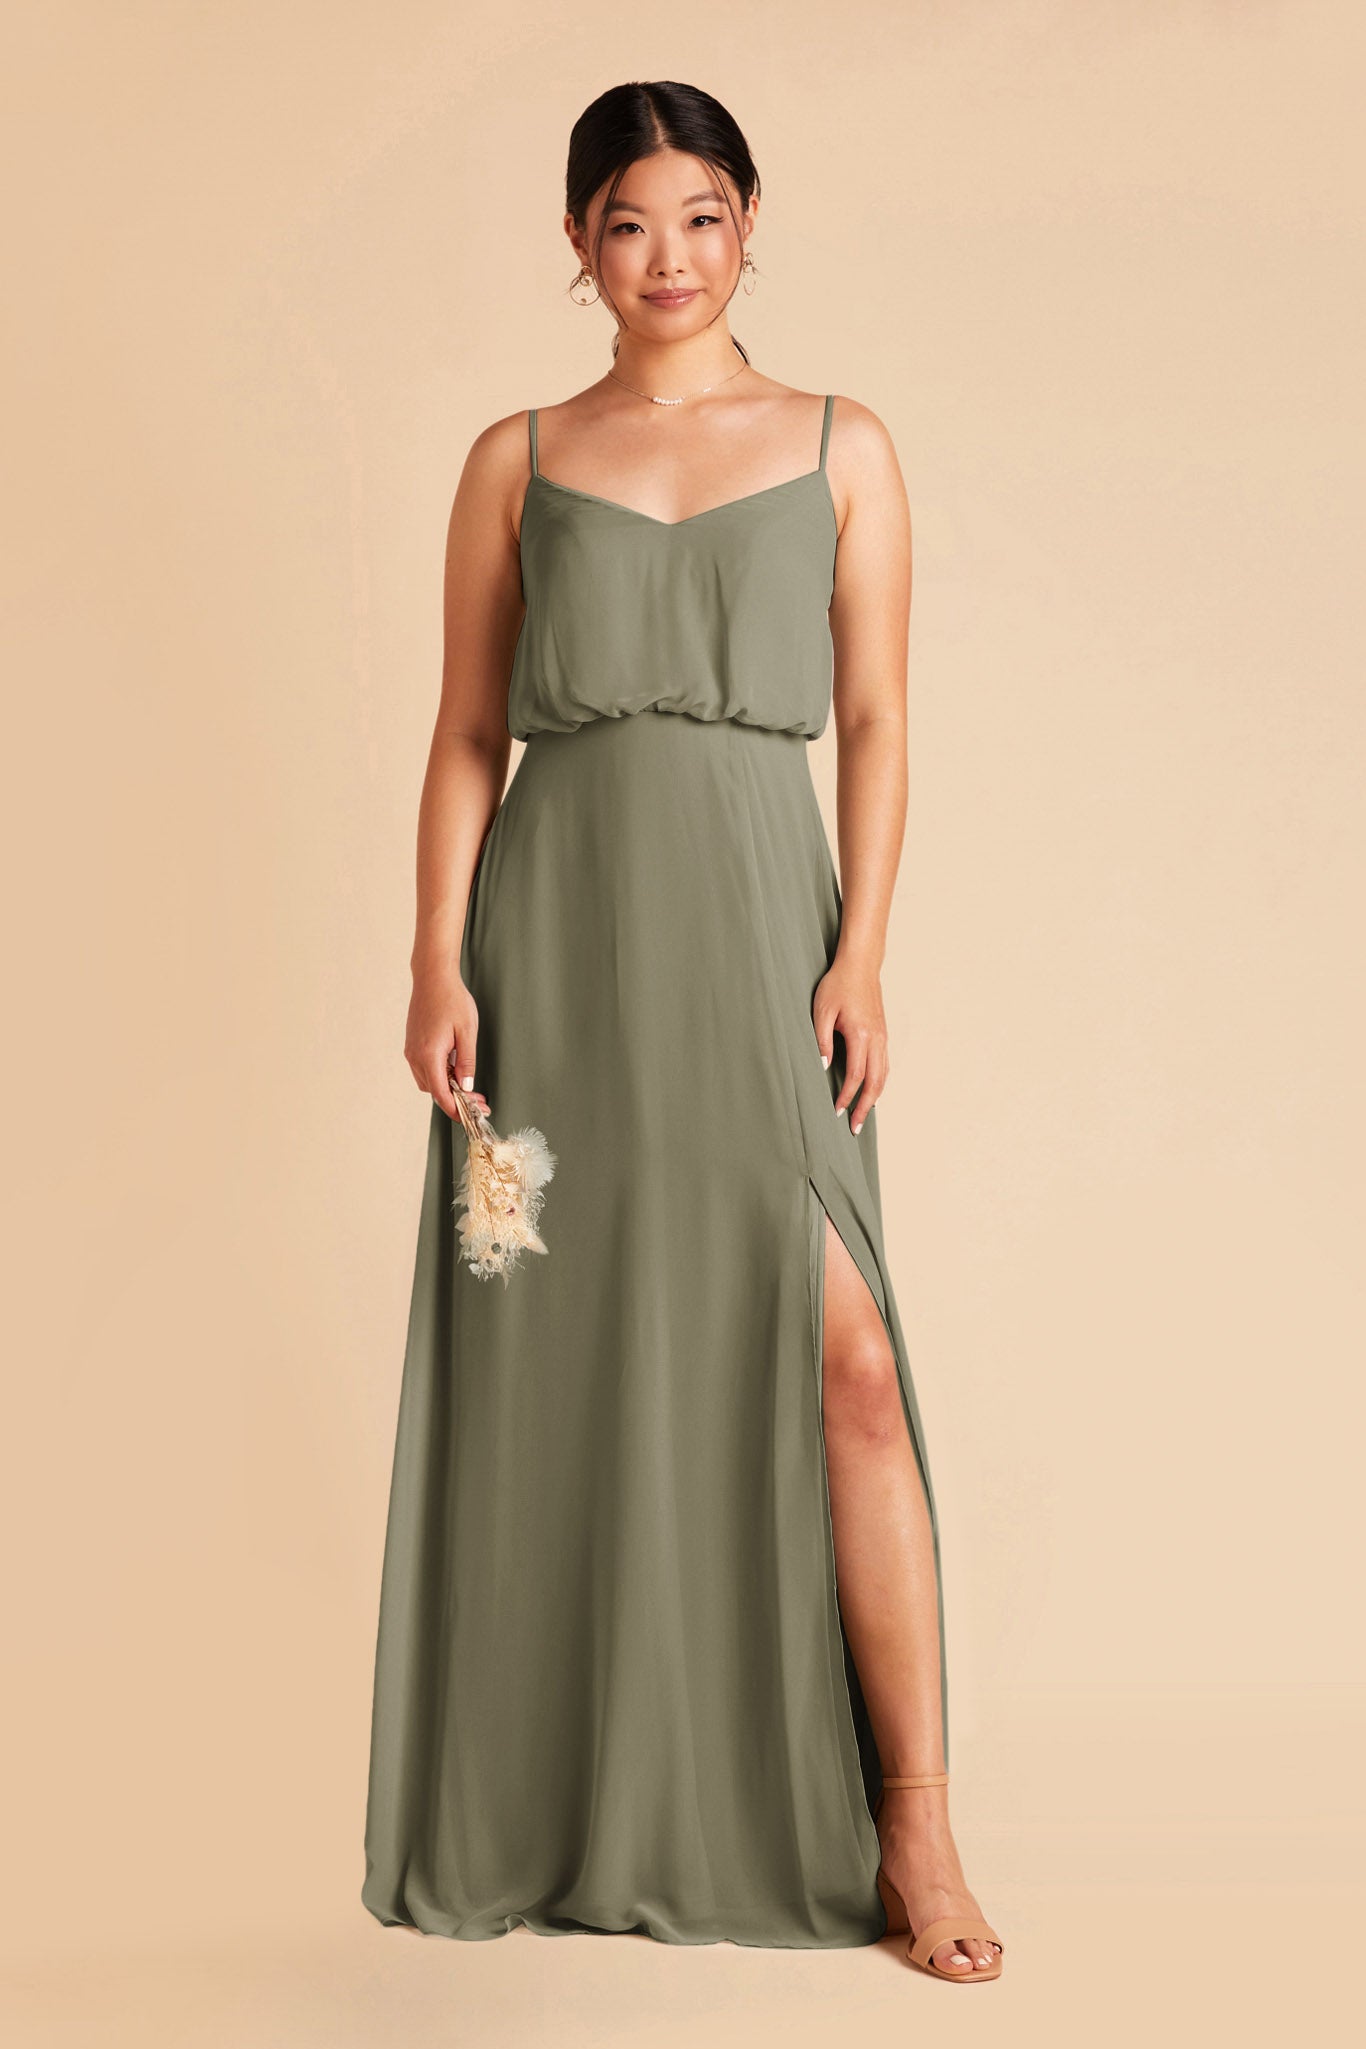 Moss Green Gwennie Dress by Birdy Grey